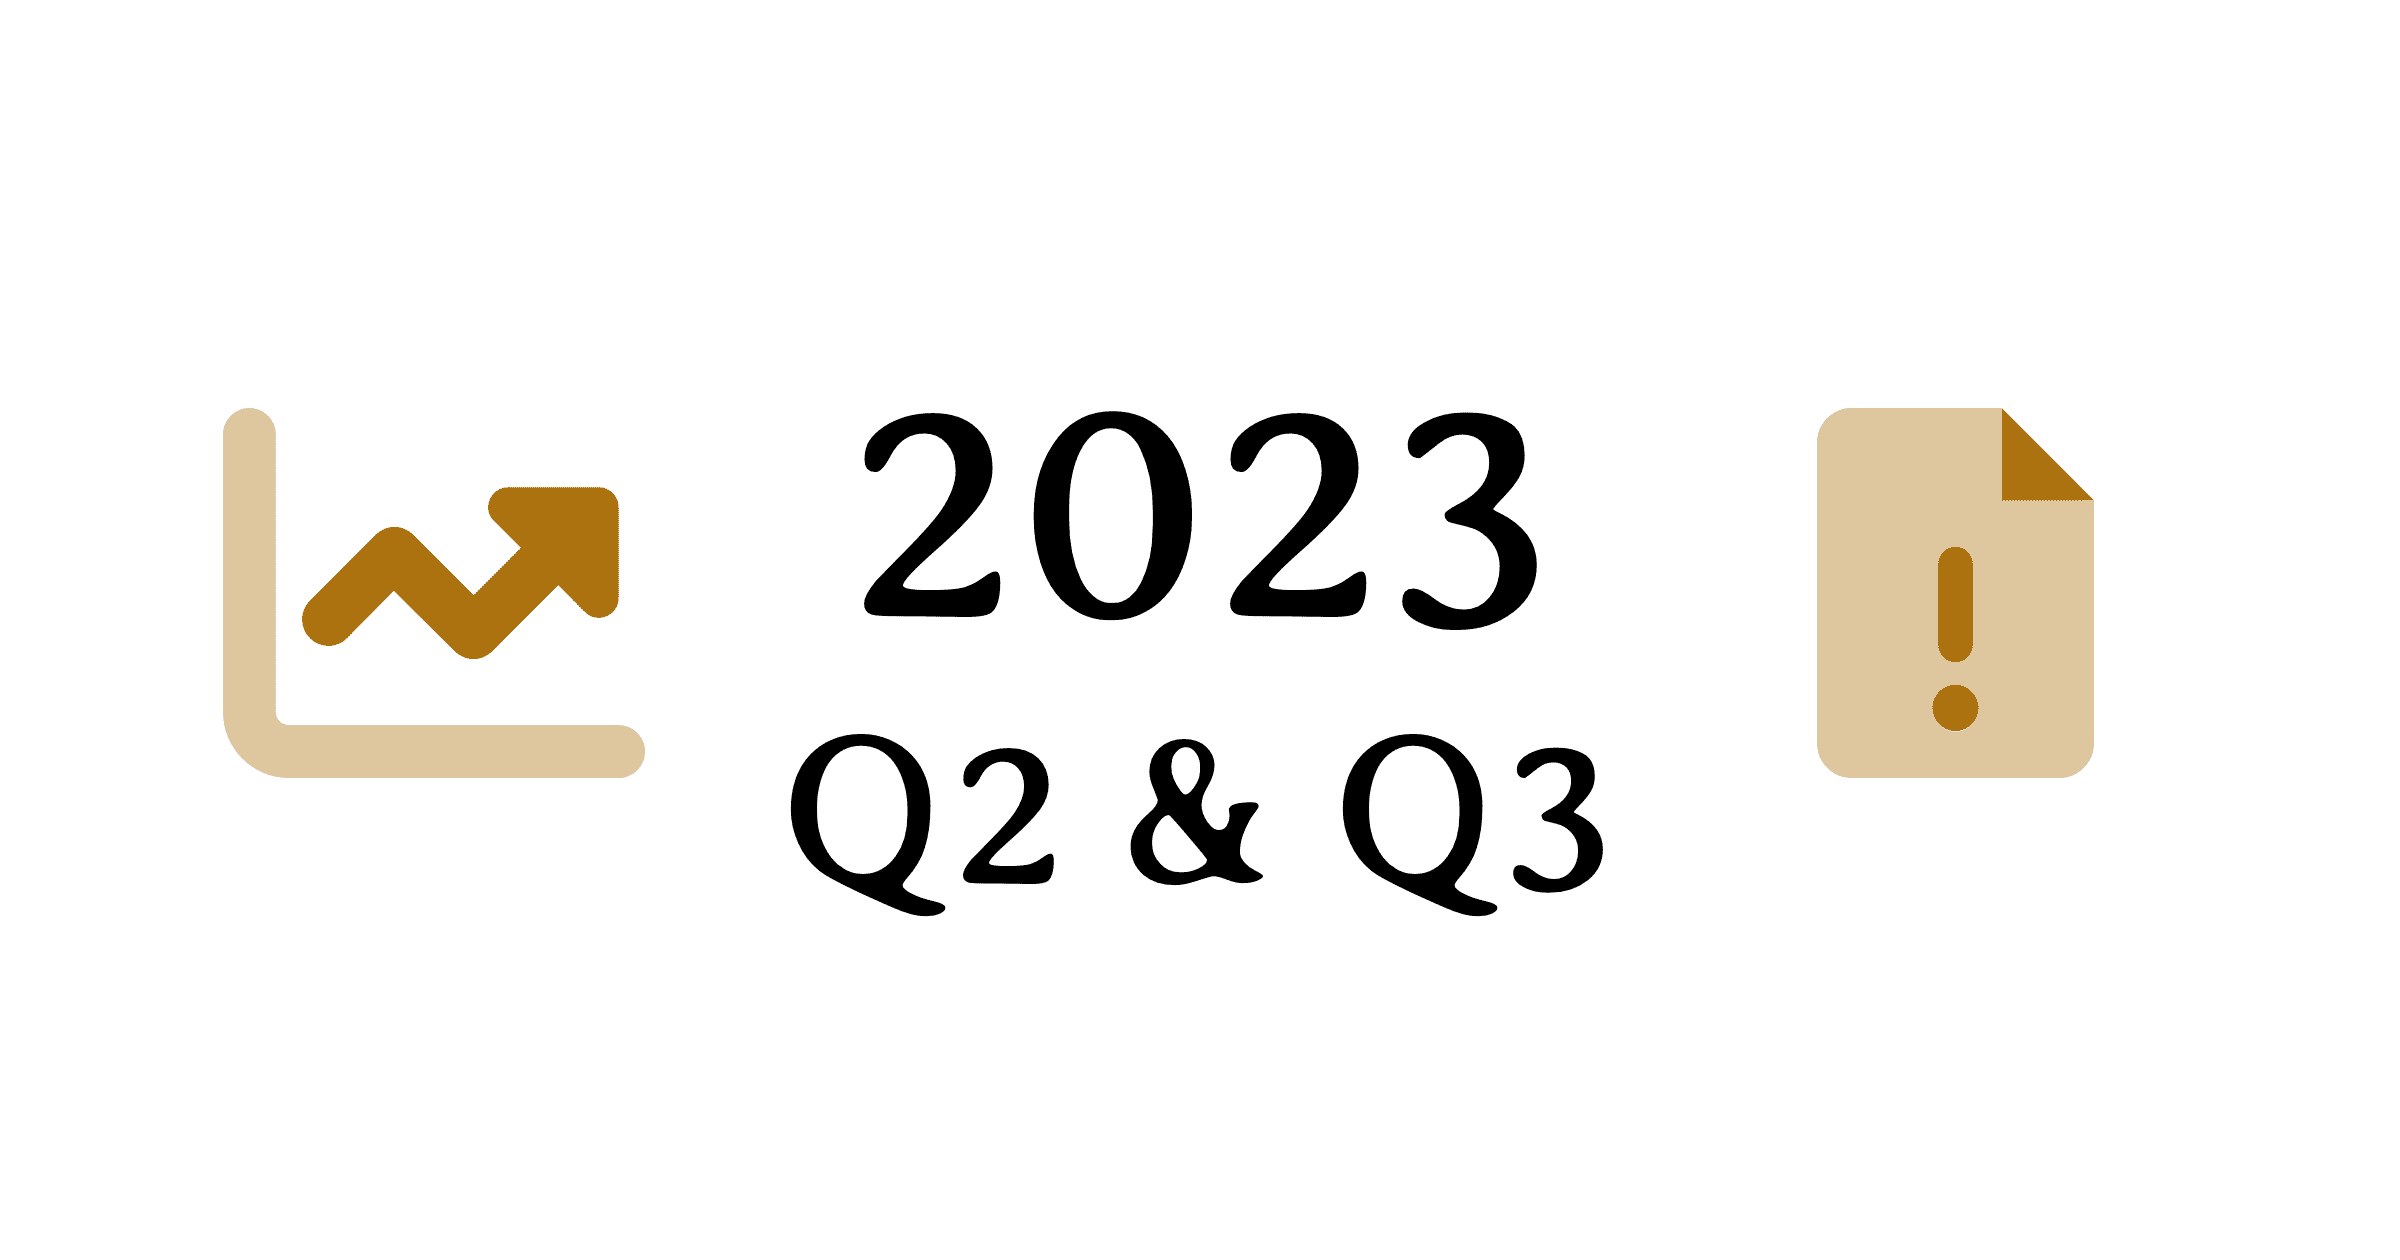 2023 Quarters 2 & 3 report